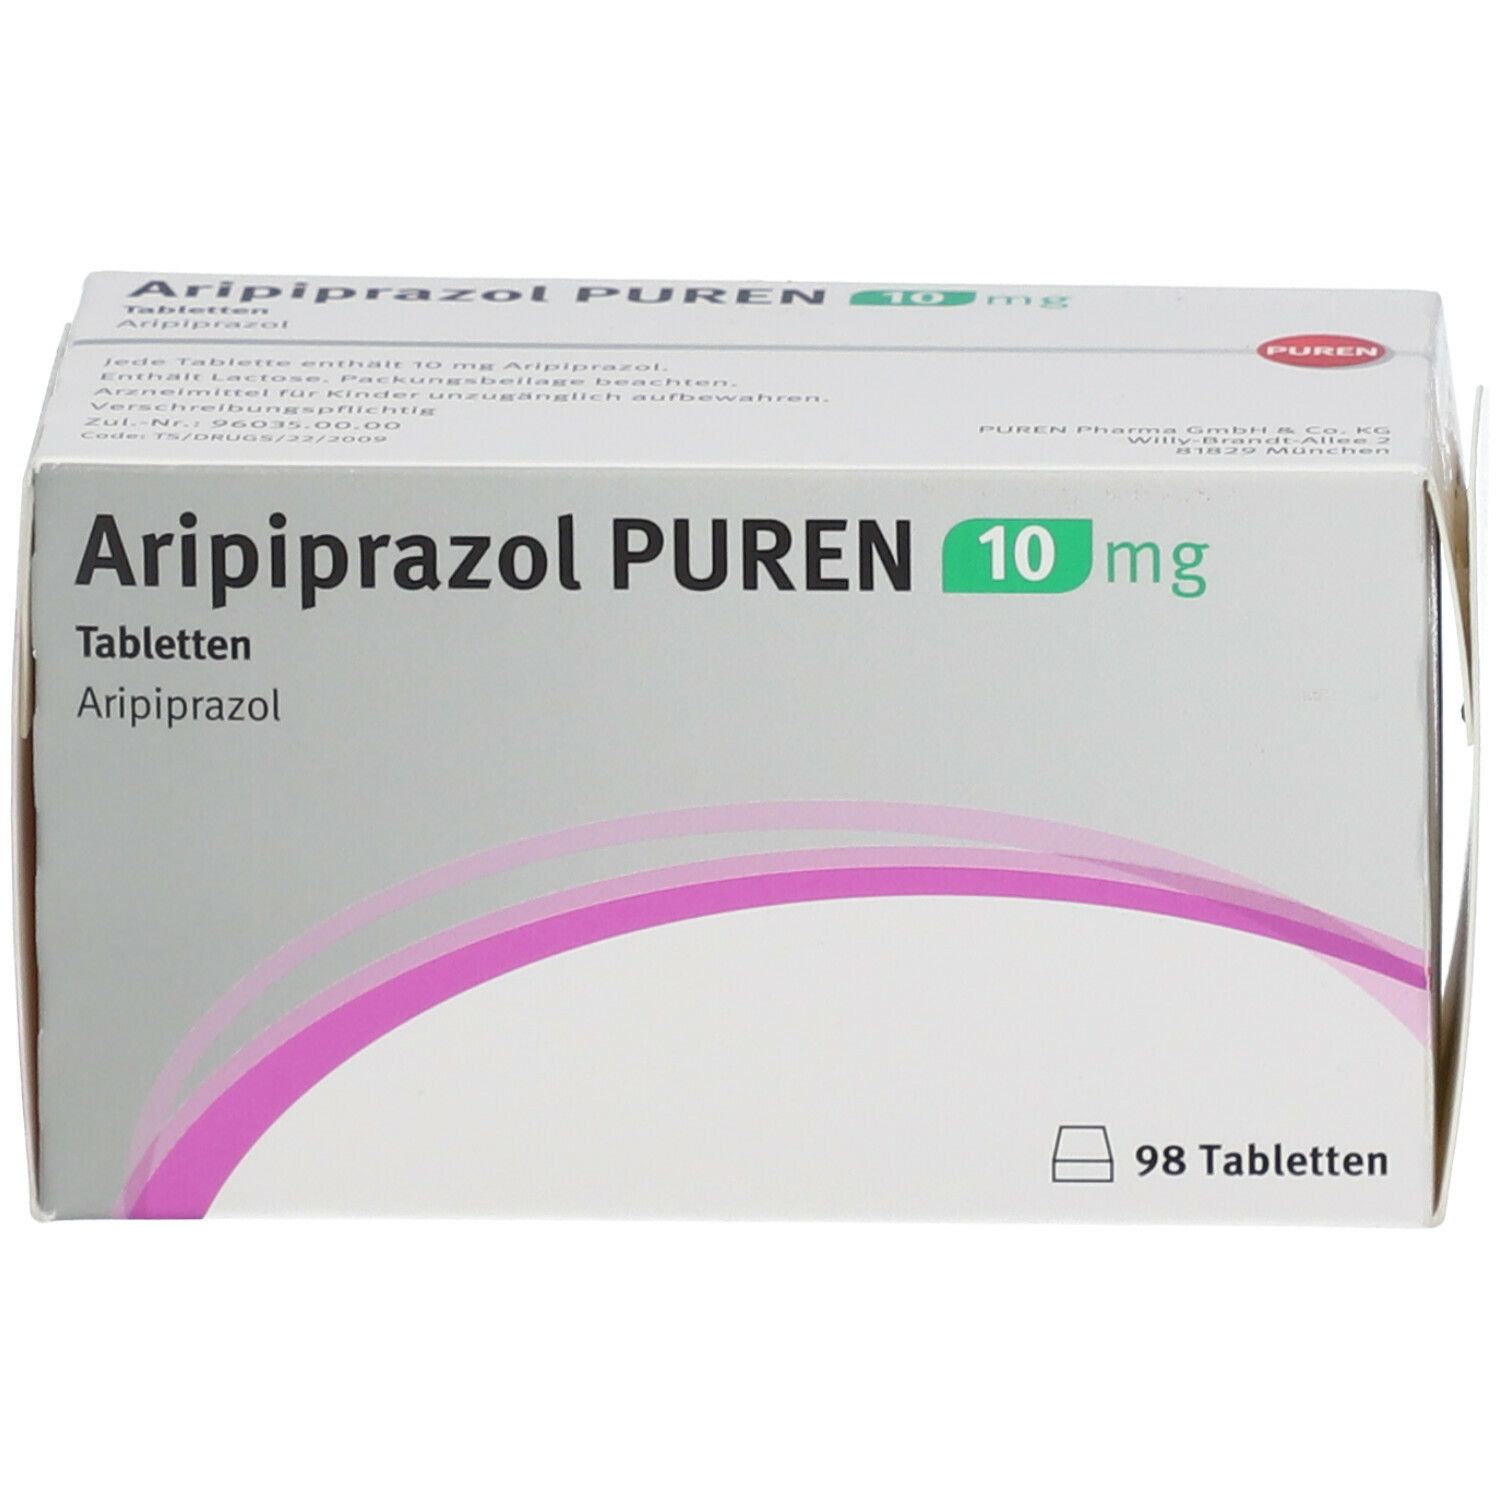 Aripiprazol PUREN 10 mg